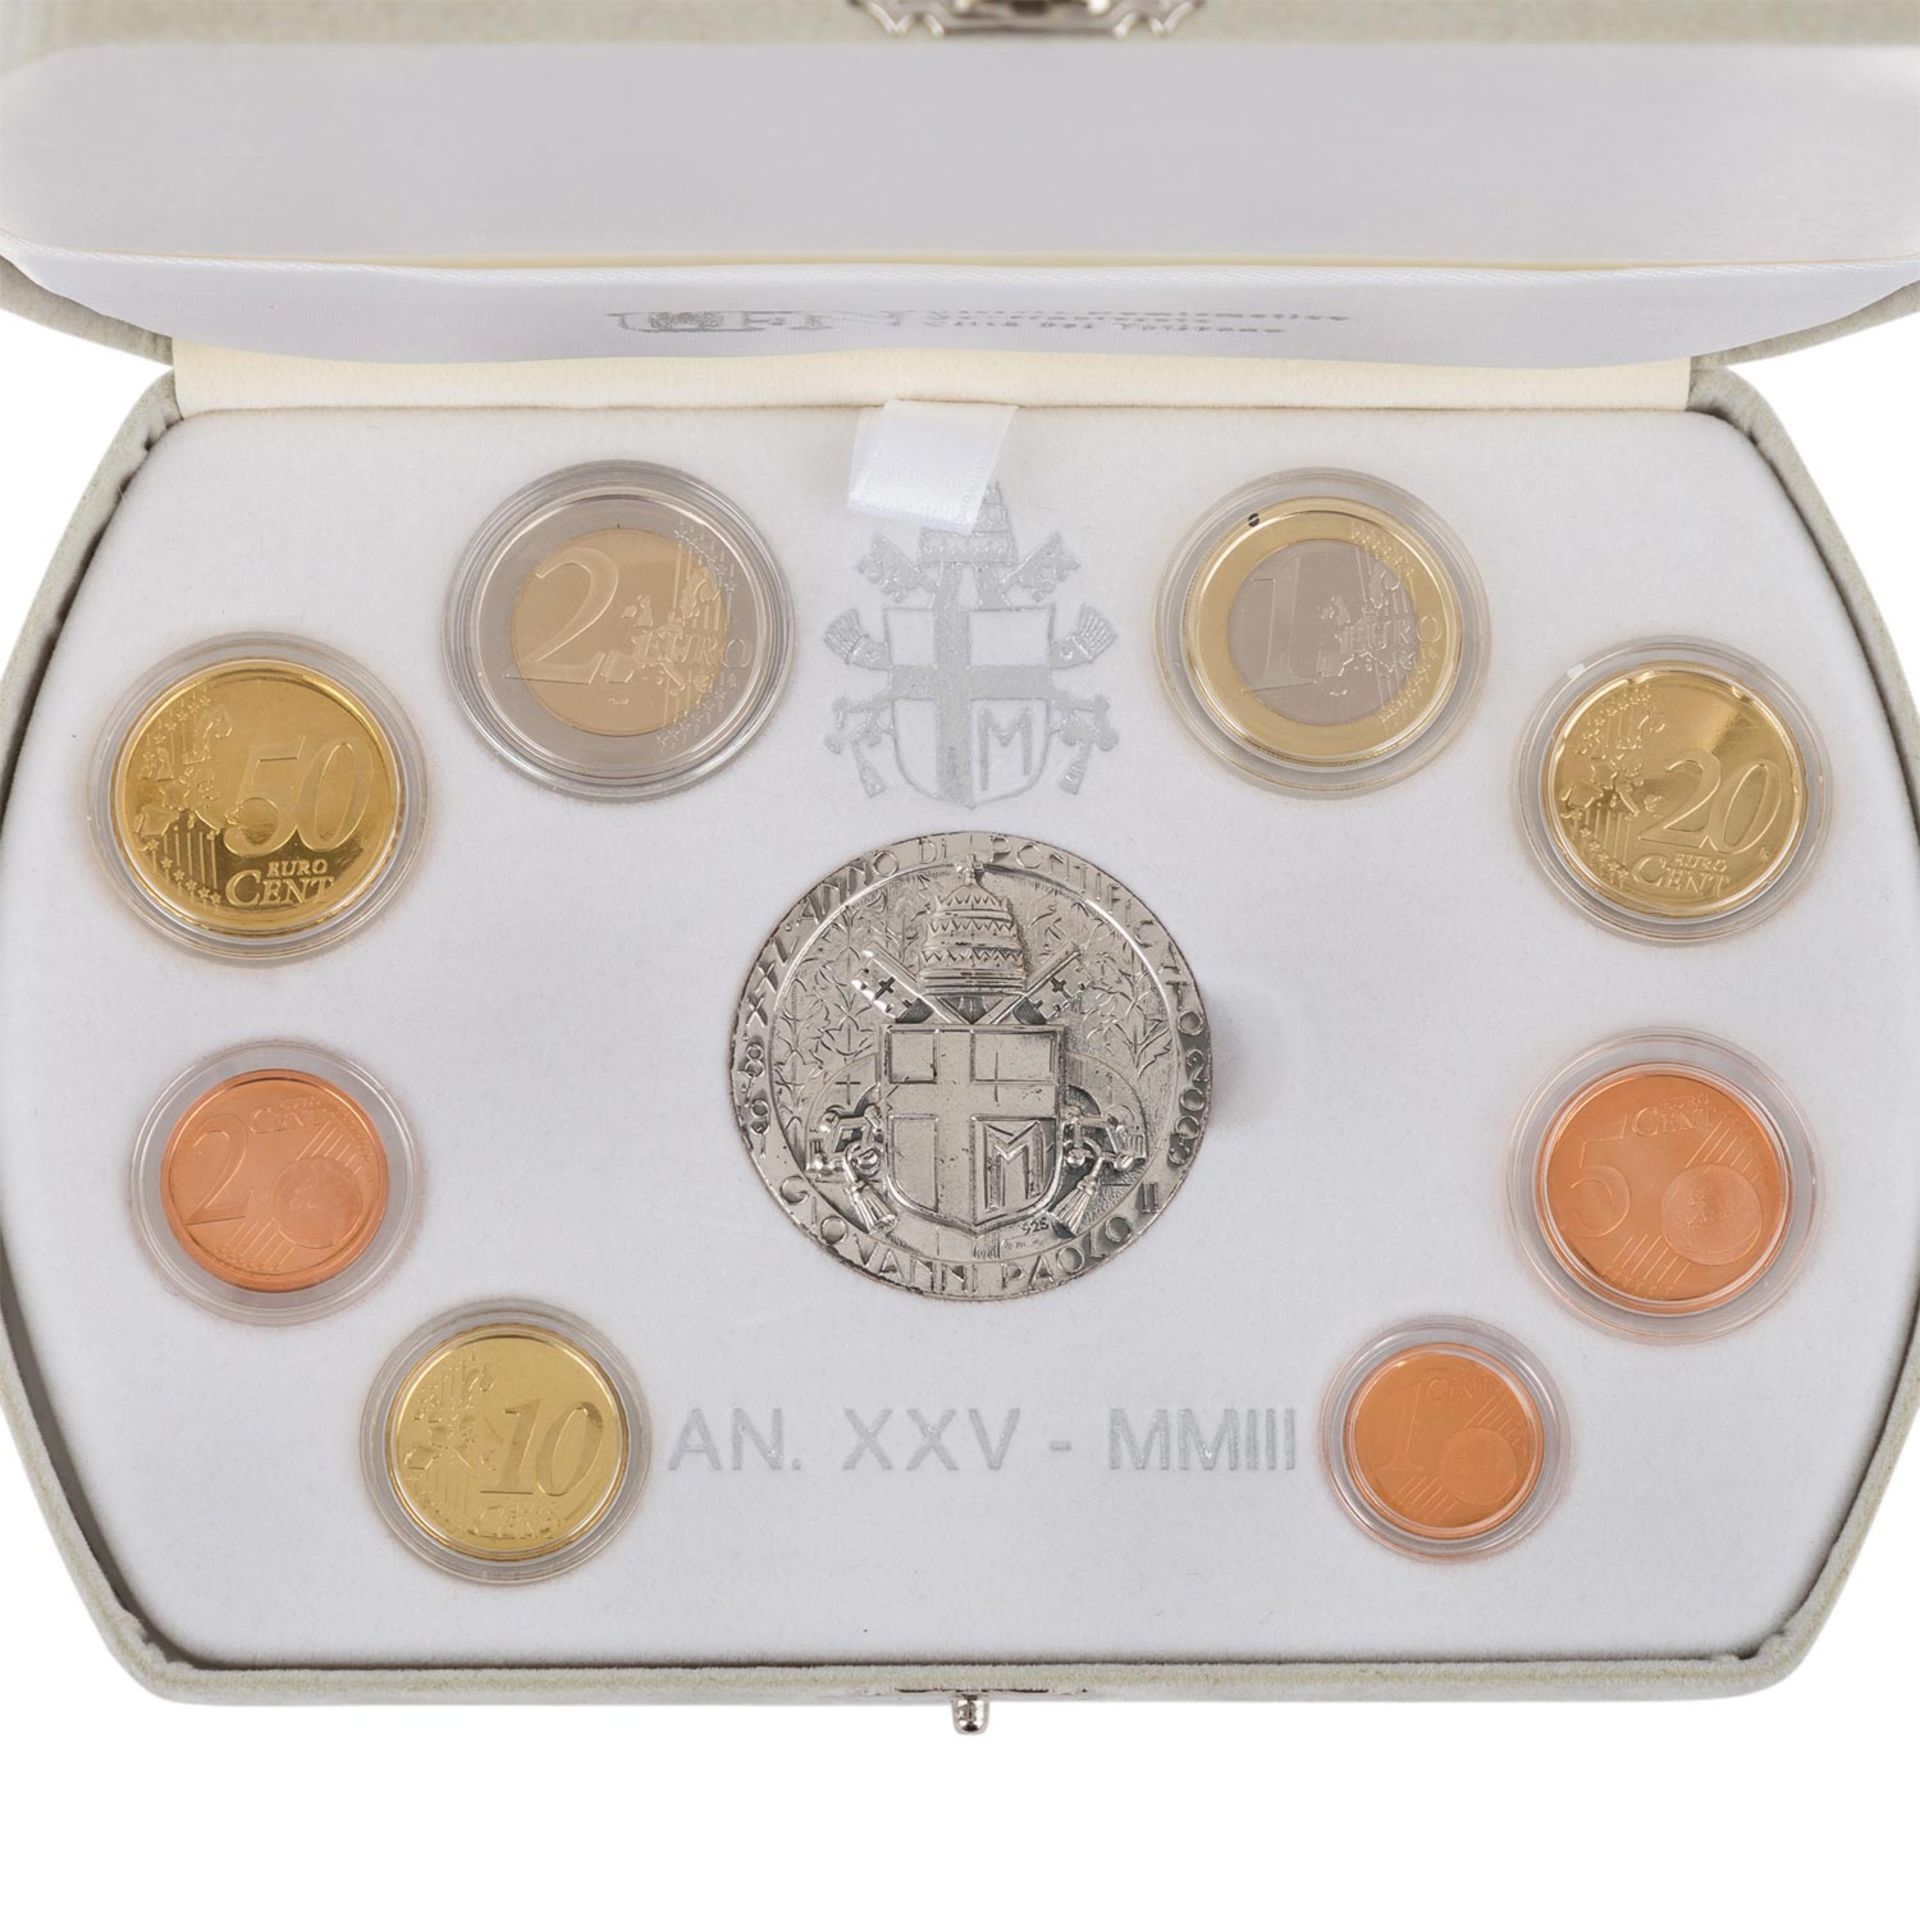 Vatikan - Prestige Euro-Kursmünzensatz mit Silbermedaille,Pontifikat Johannes Paul II. im Jahr 2003. - Bild 2 aus 3